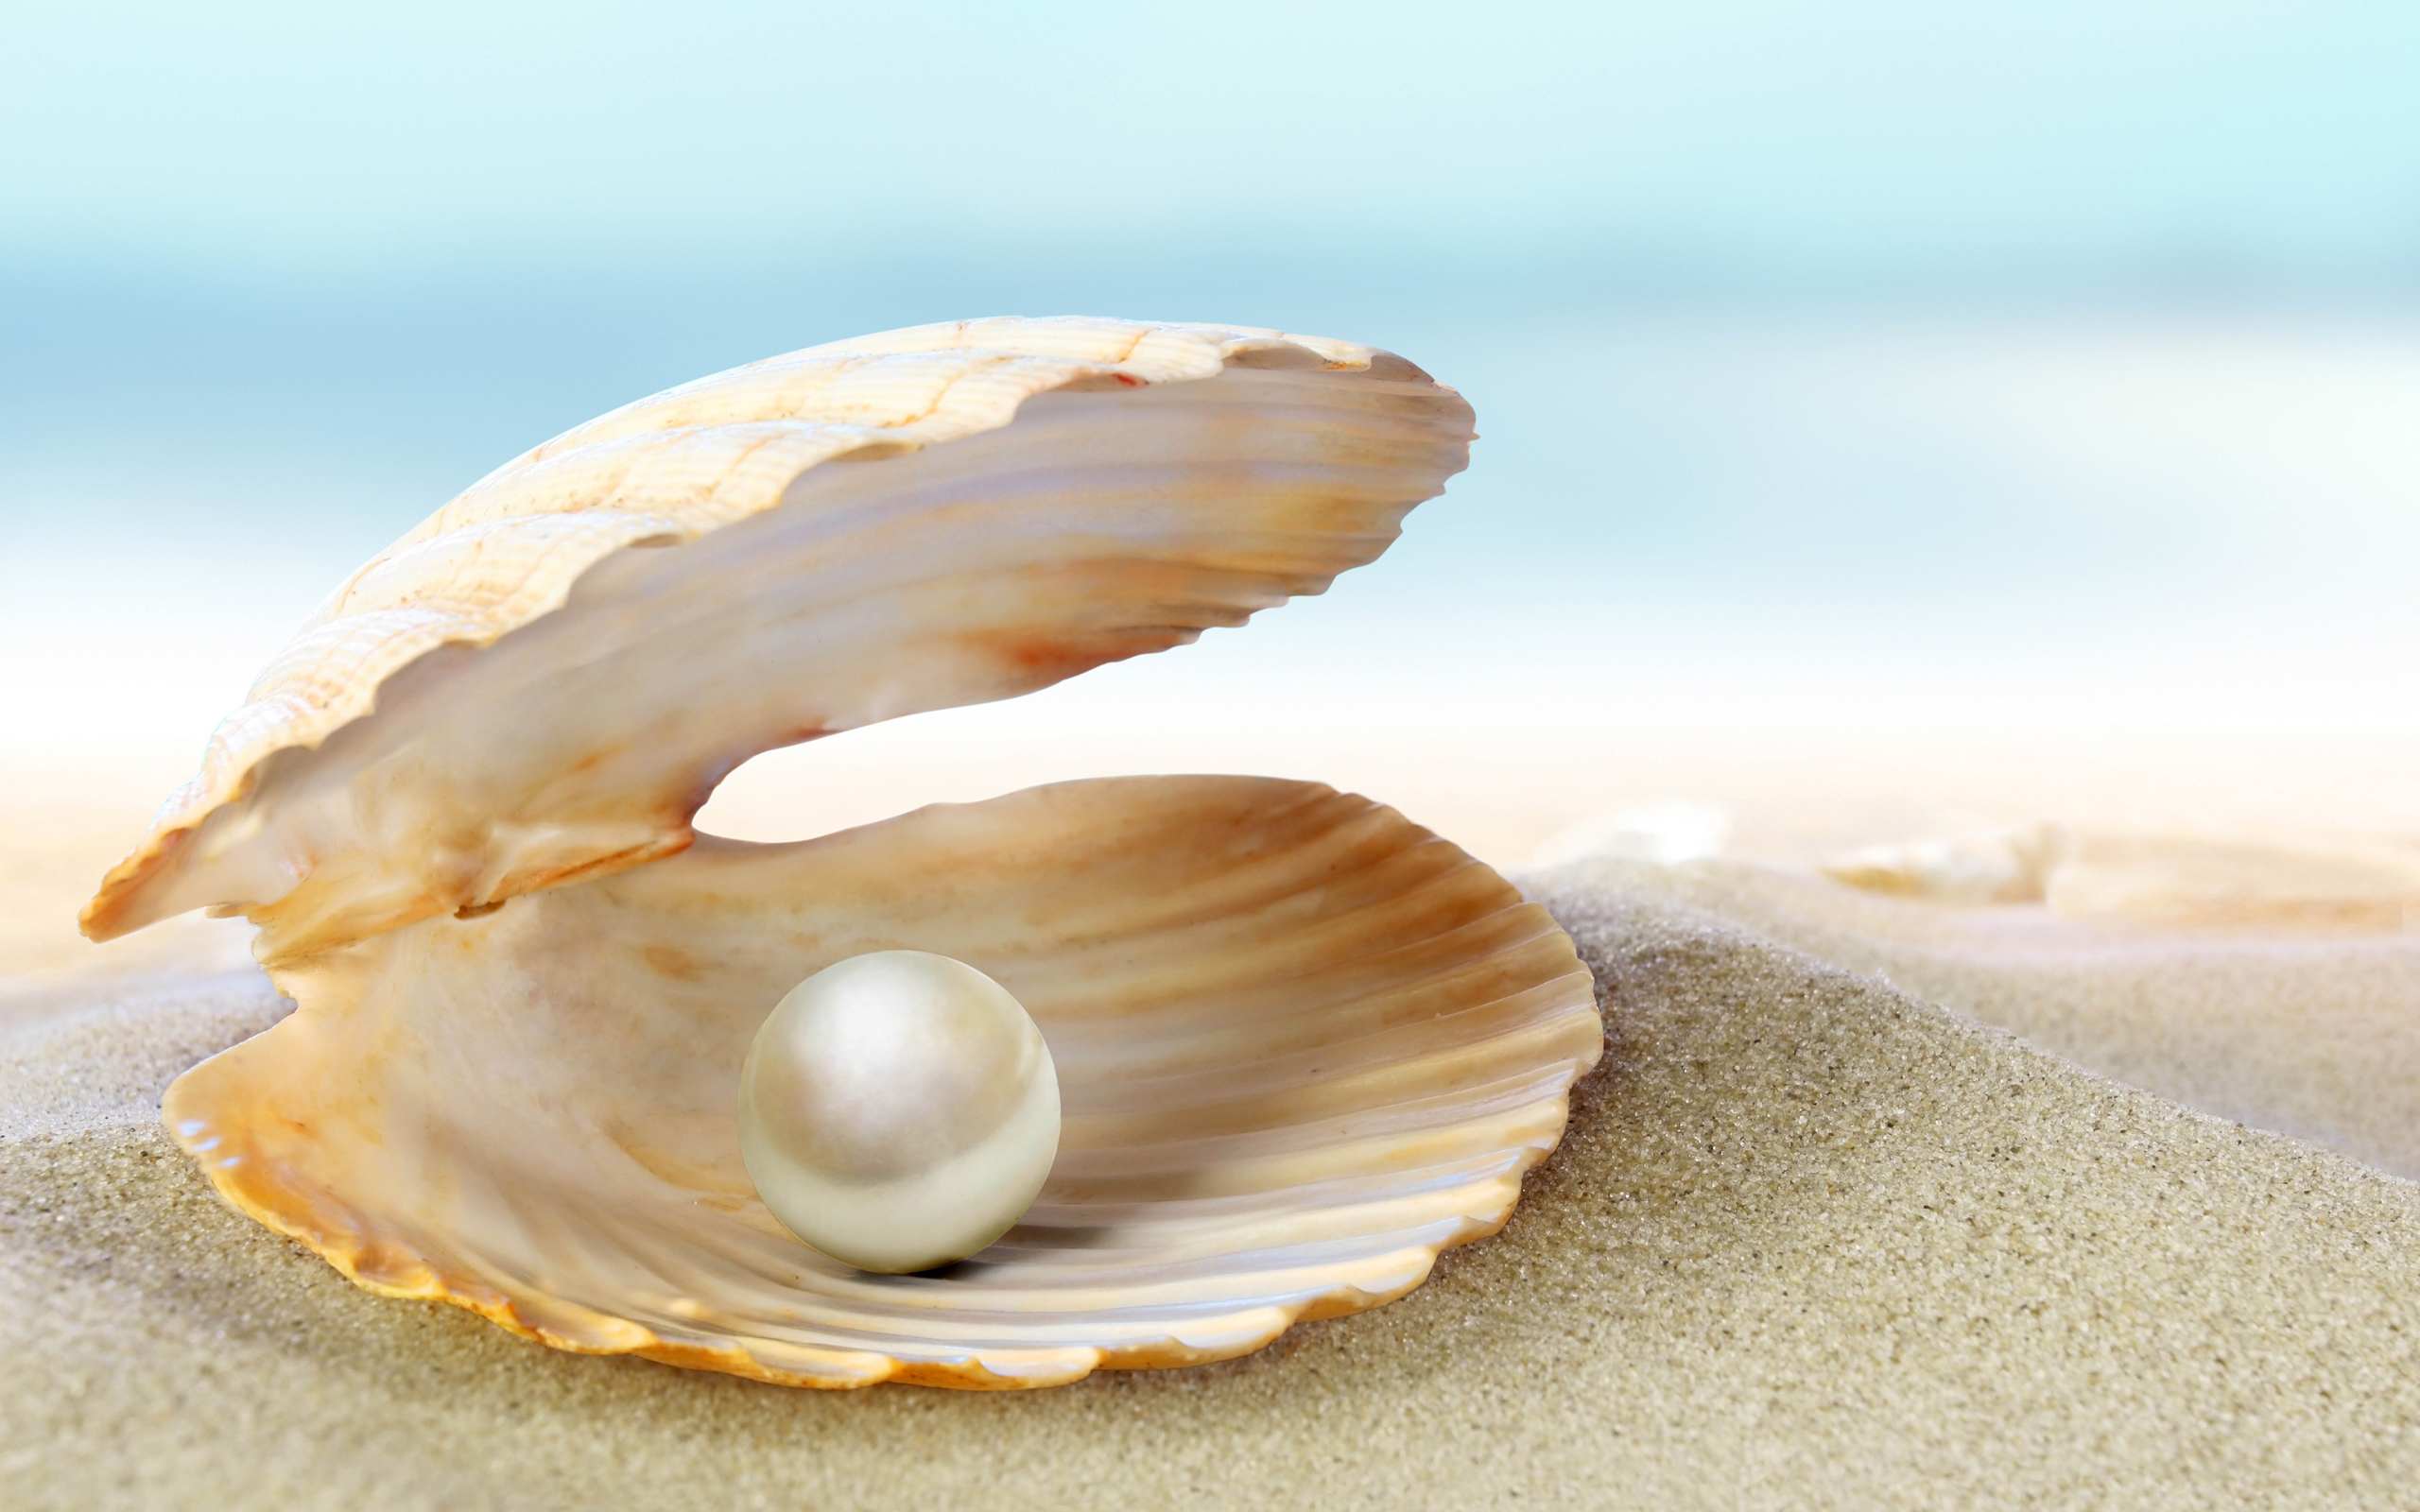 เคล็ดลับผิวขาว ด้วยอัญมณีอันล้ำค่าจากท้องทะเลด้วยสารสกัดจากไข่มุก (Pearl Extract)